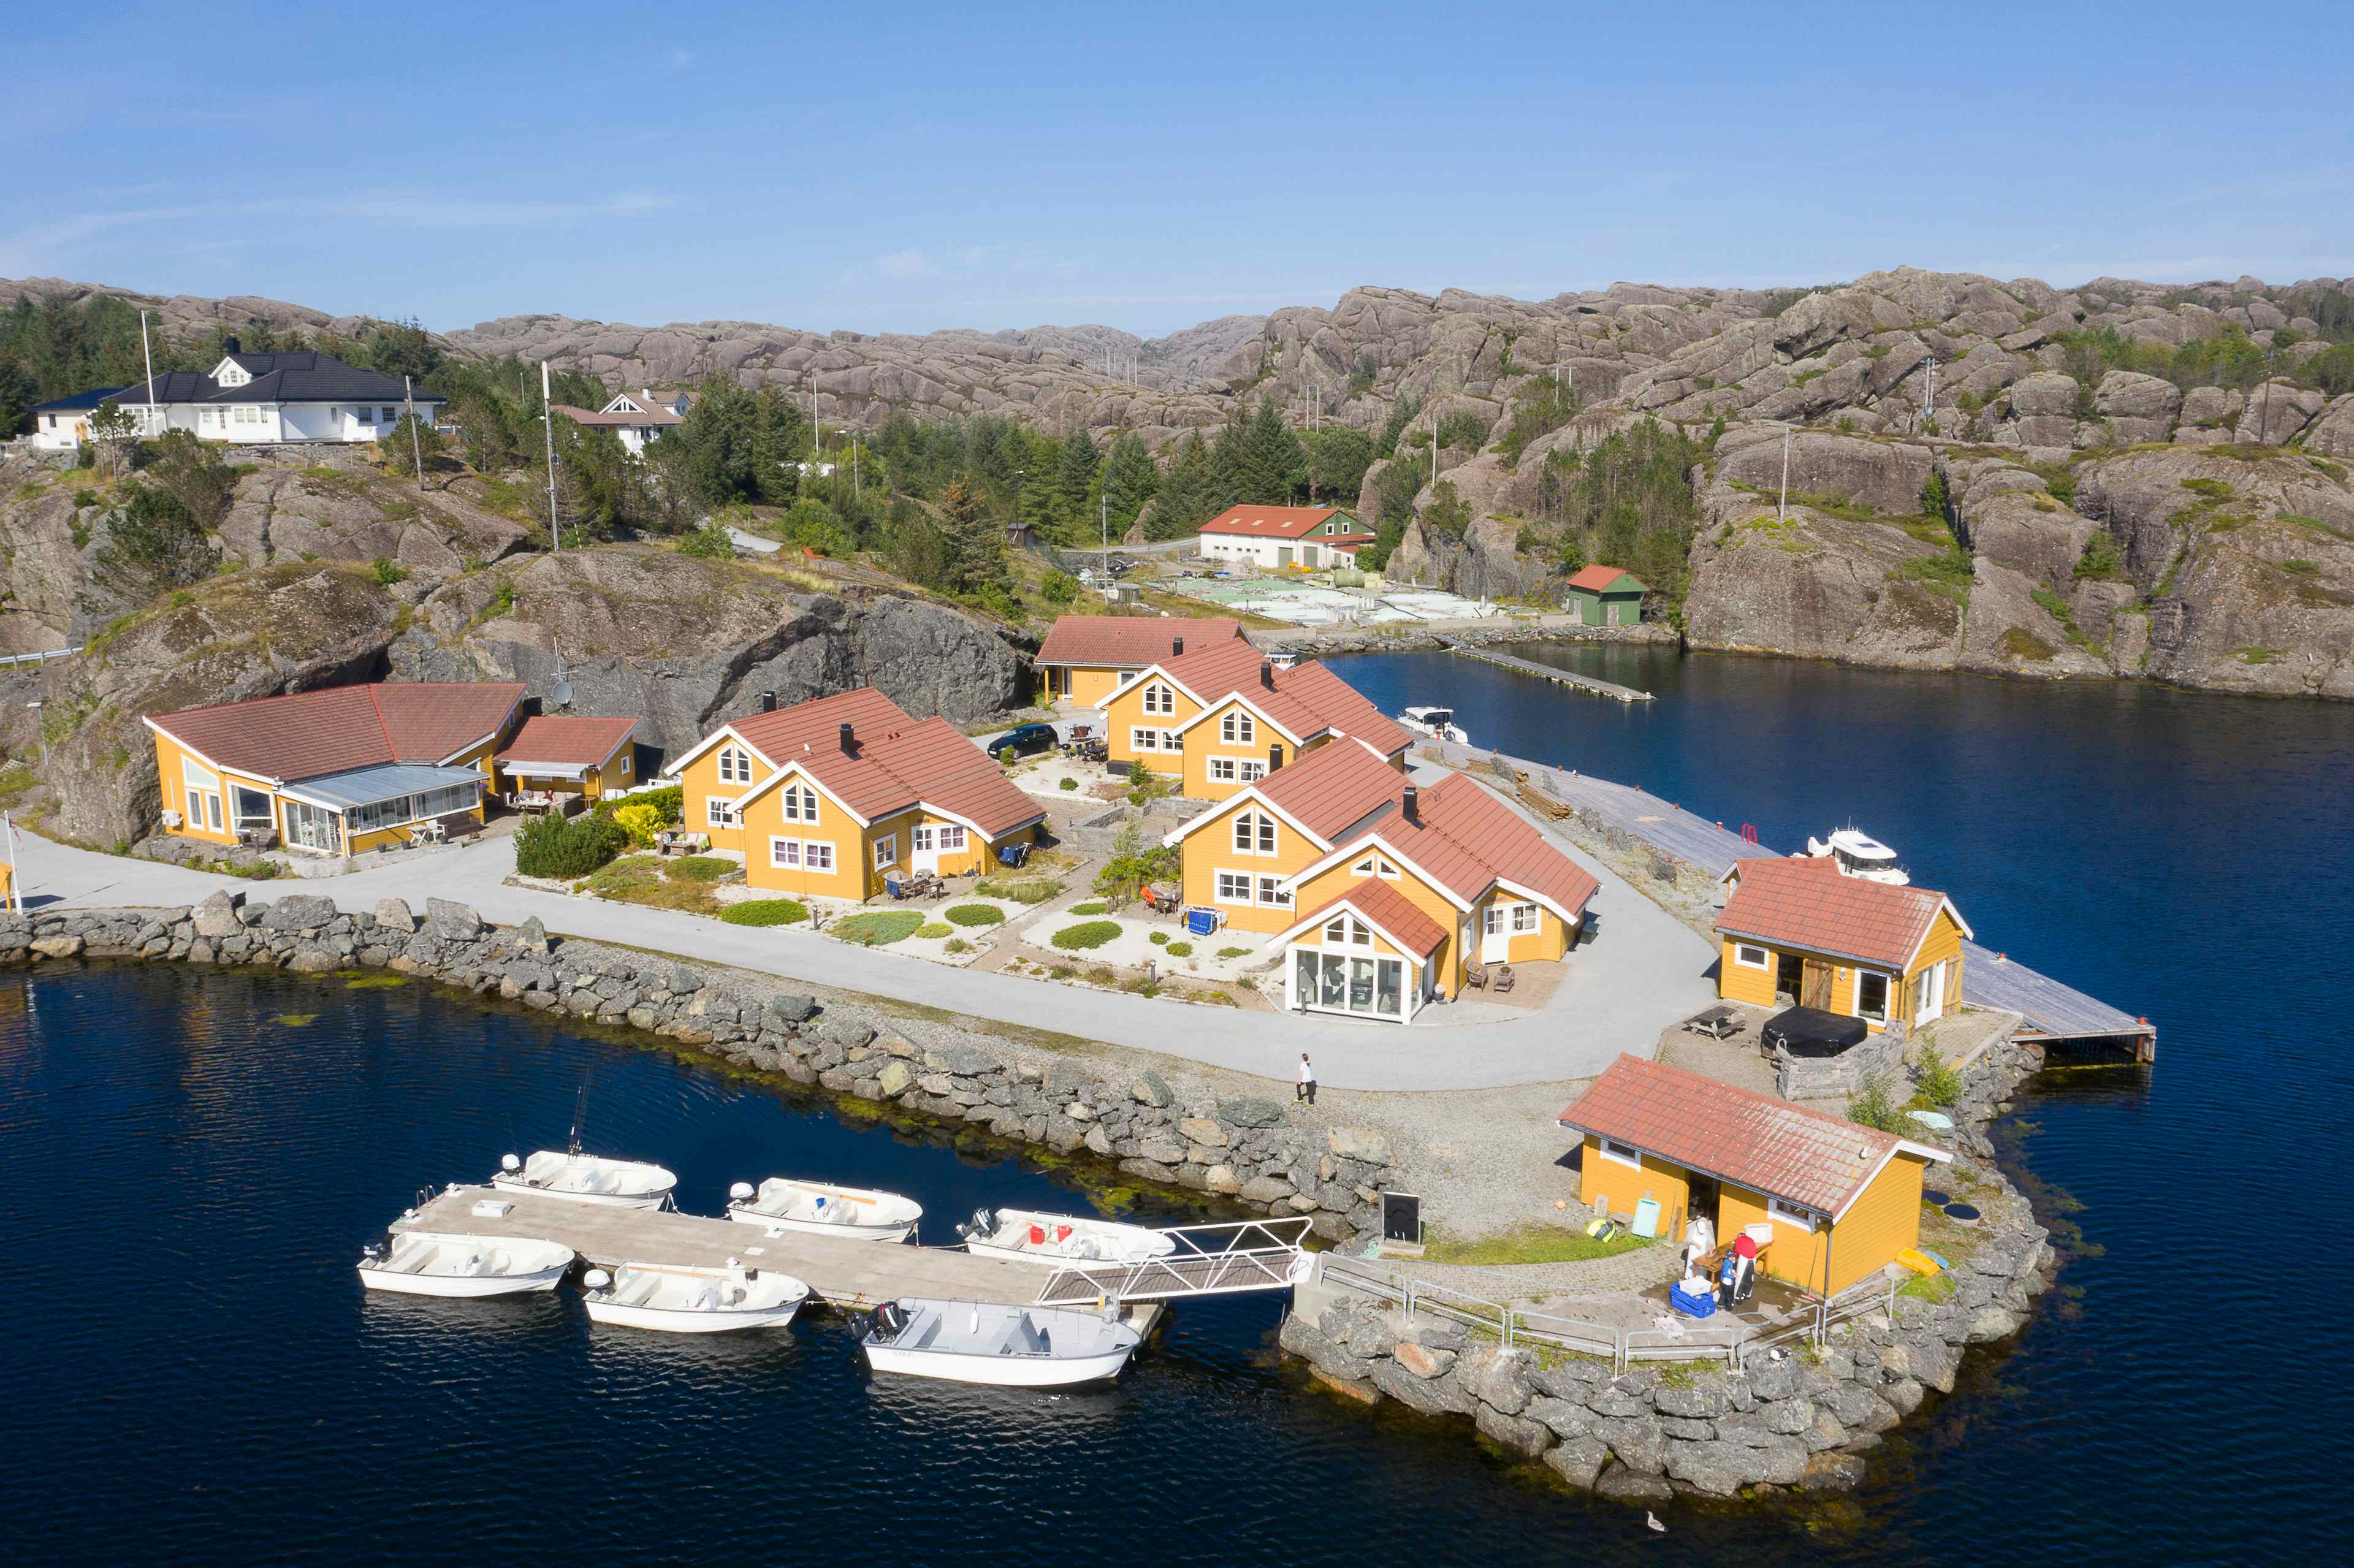 Velkomen til Solund Rorbuferie - her finn du gode båtar til utleige.